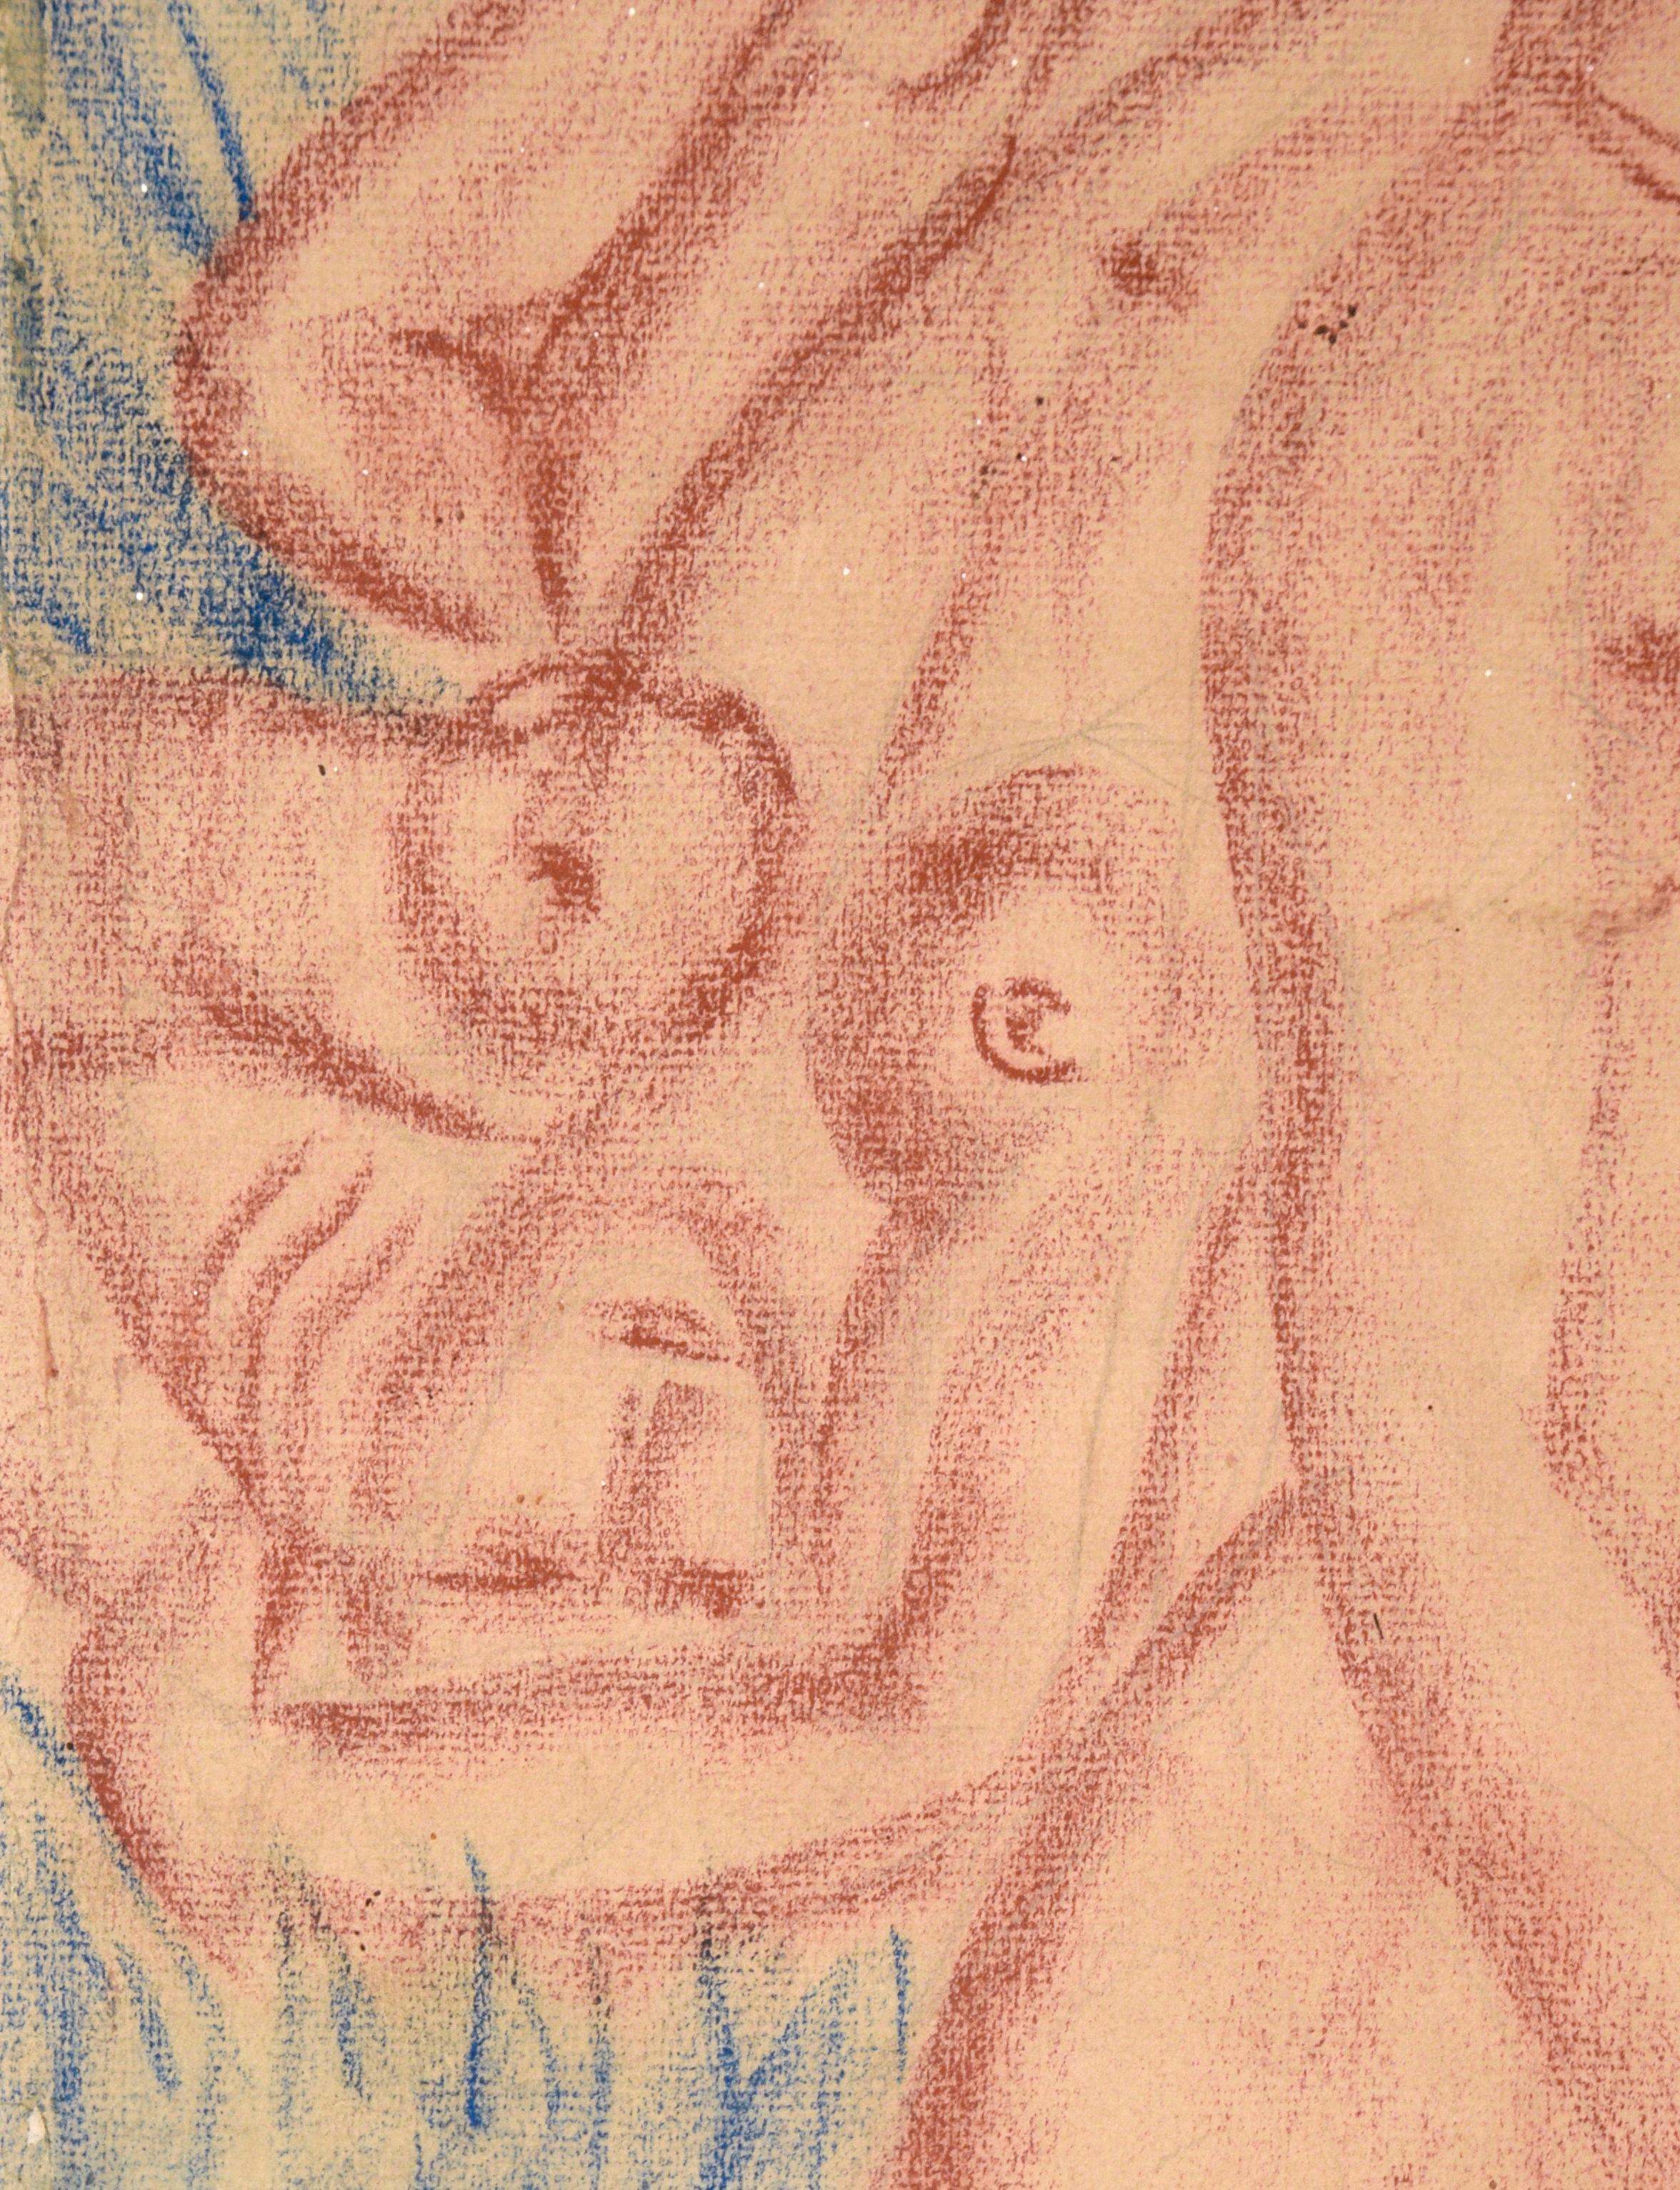 Vintage 3 Figurative Nudes in Conté Crayon on Paper (1946) by Matté‎  For Sale 2